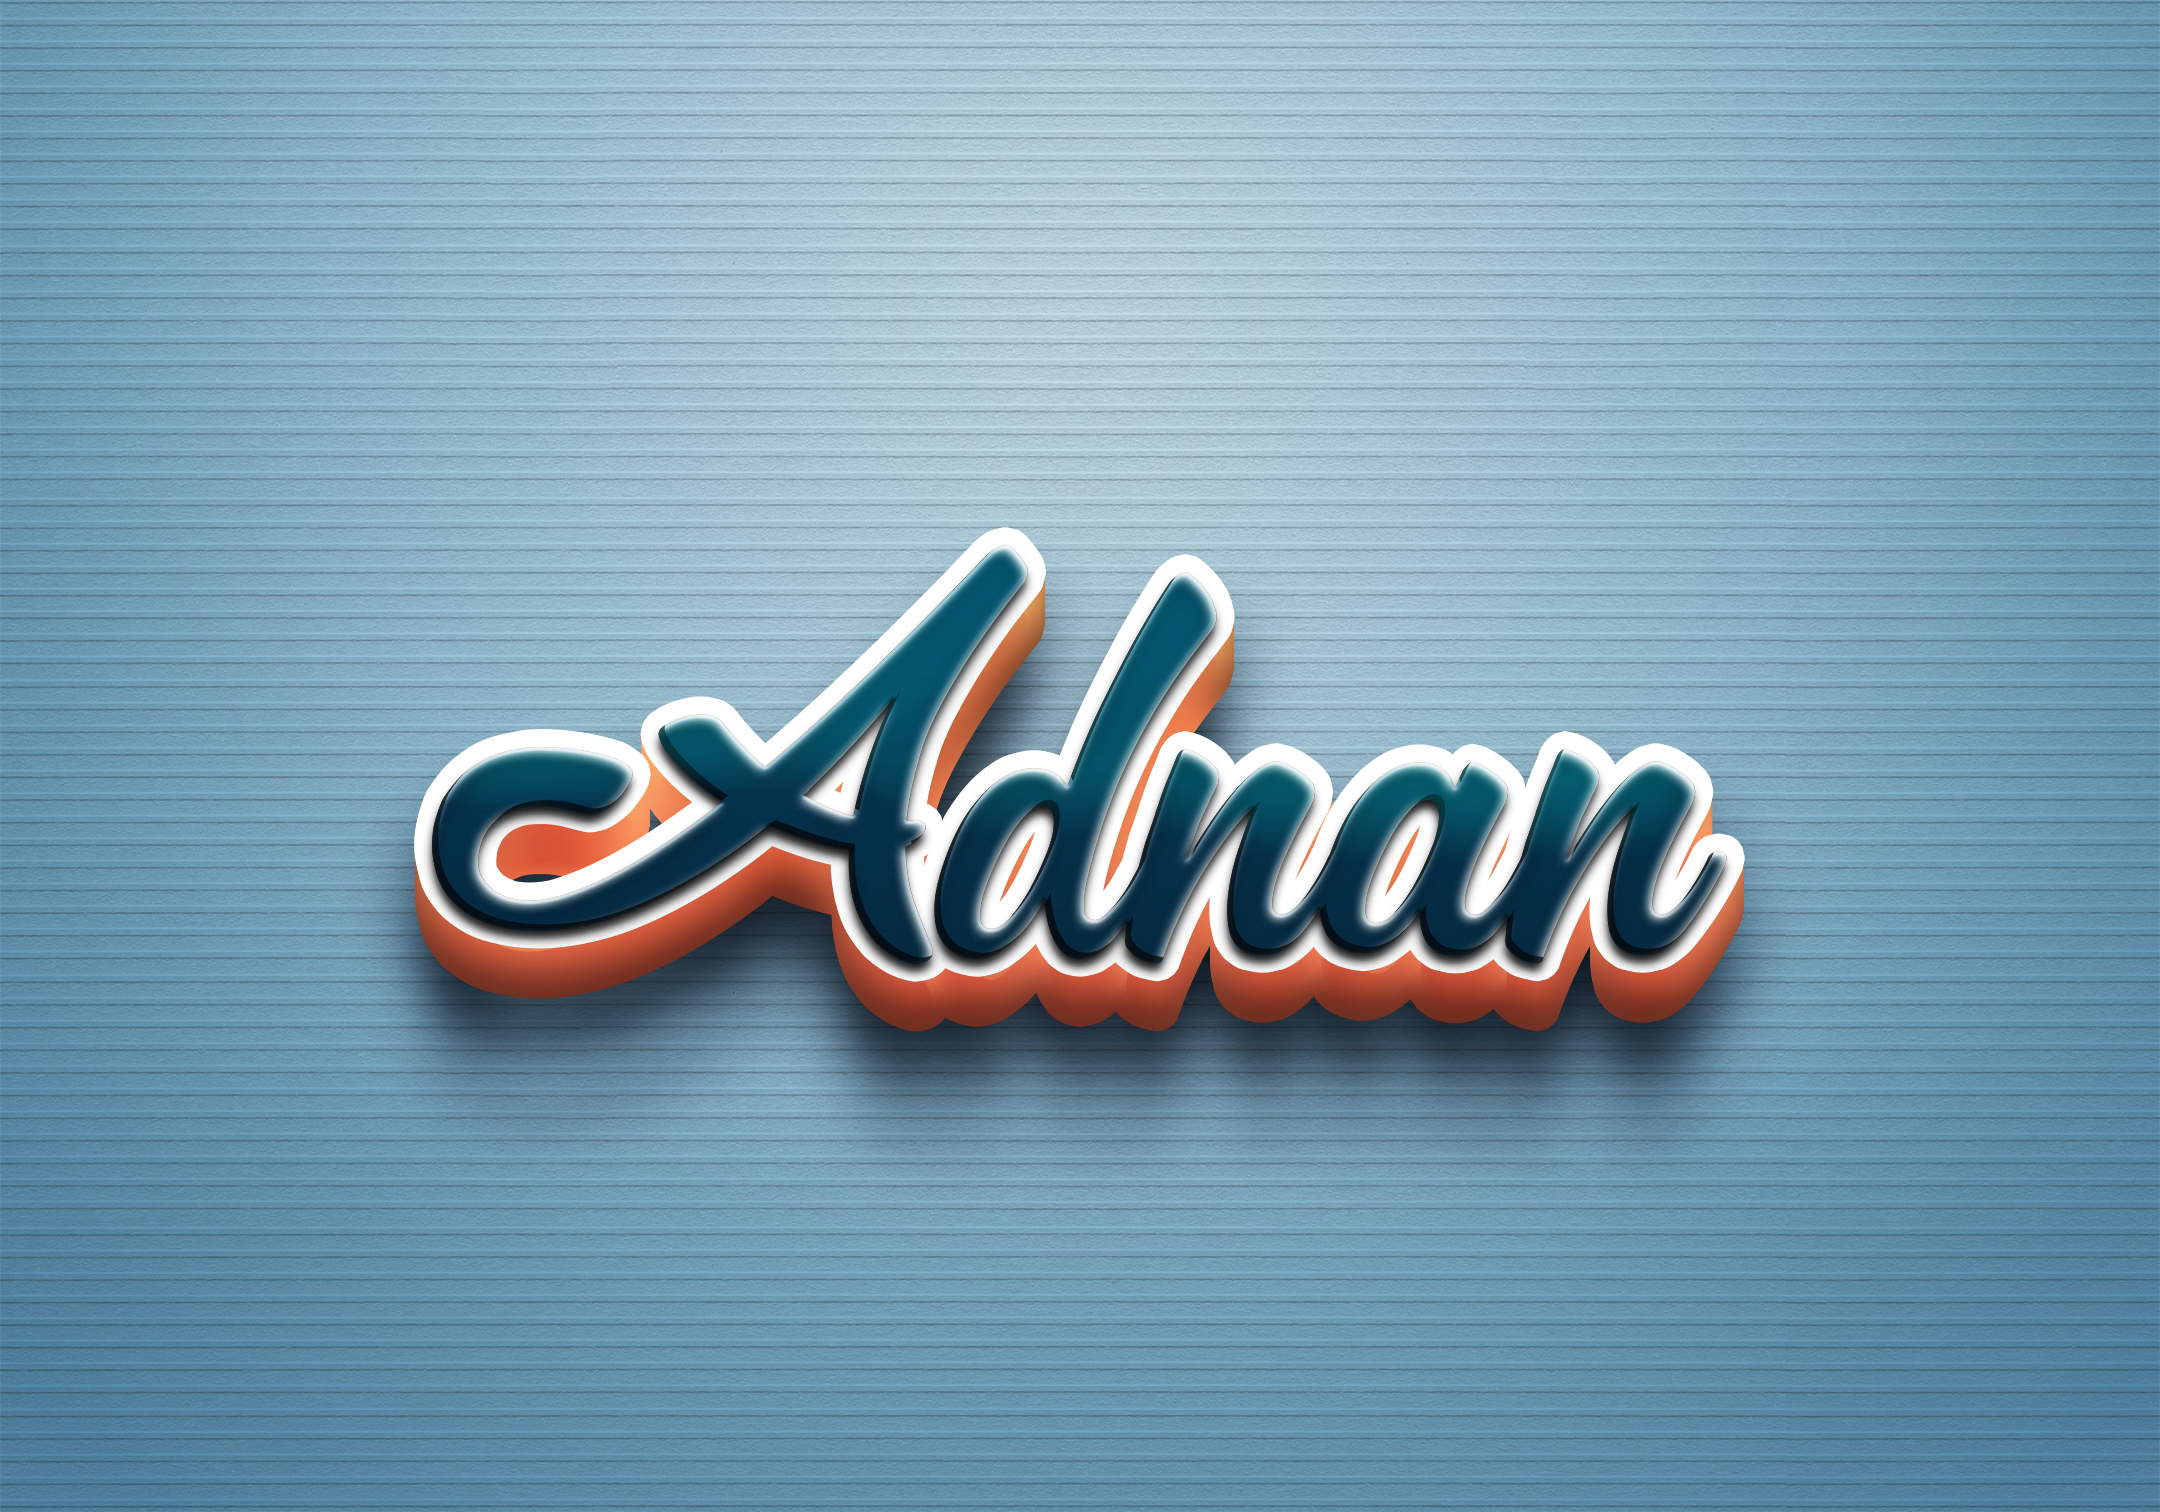 H + Playmark Logo for Husain Adnan by Md Iqbal Hossain on Dribbble